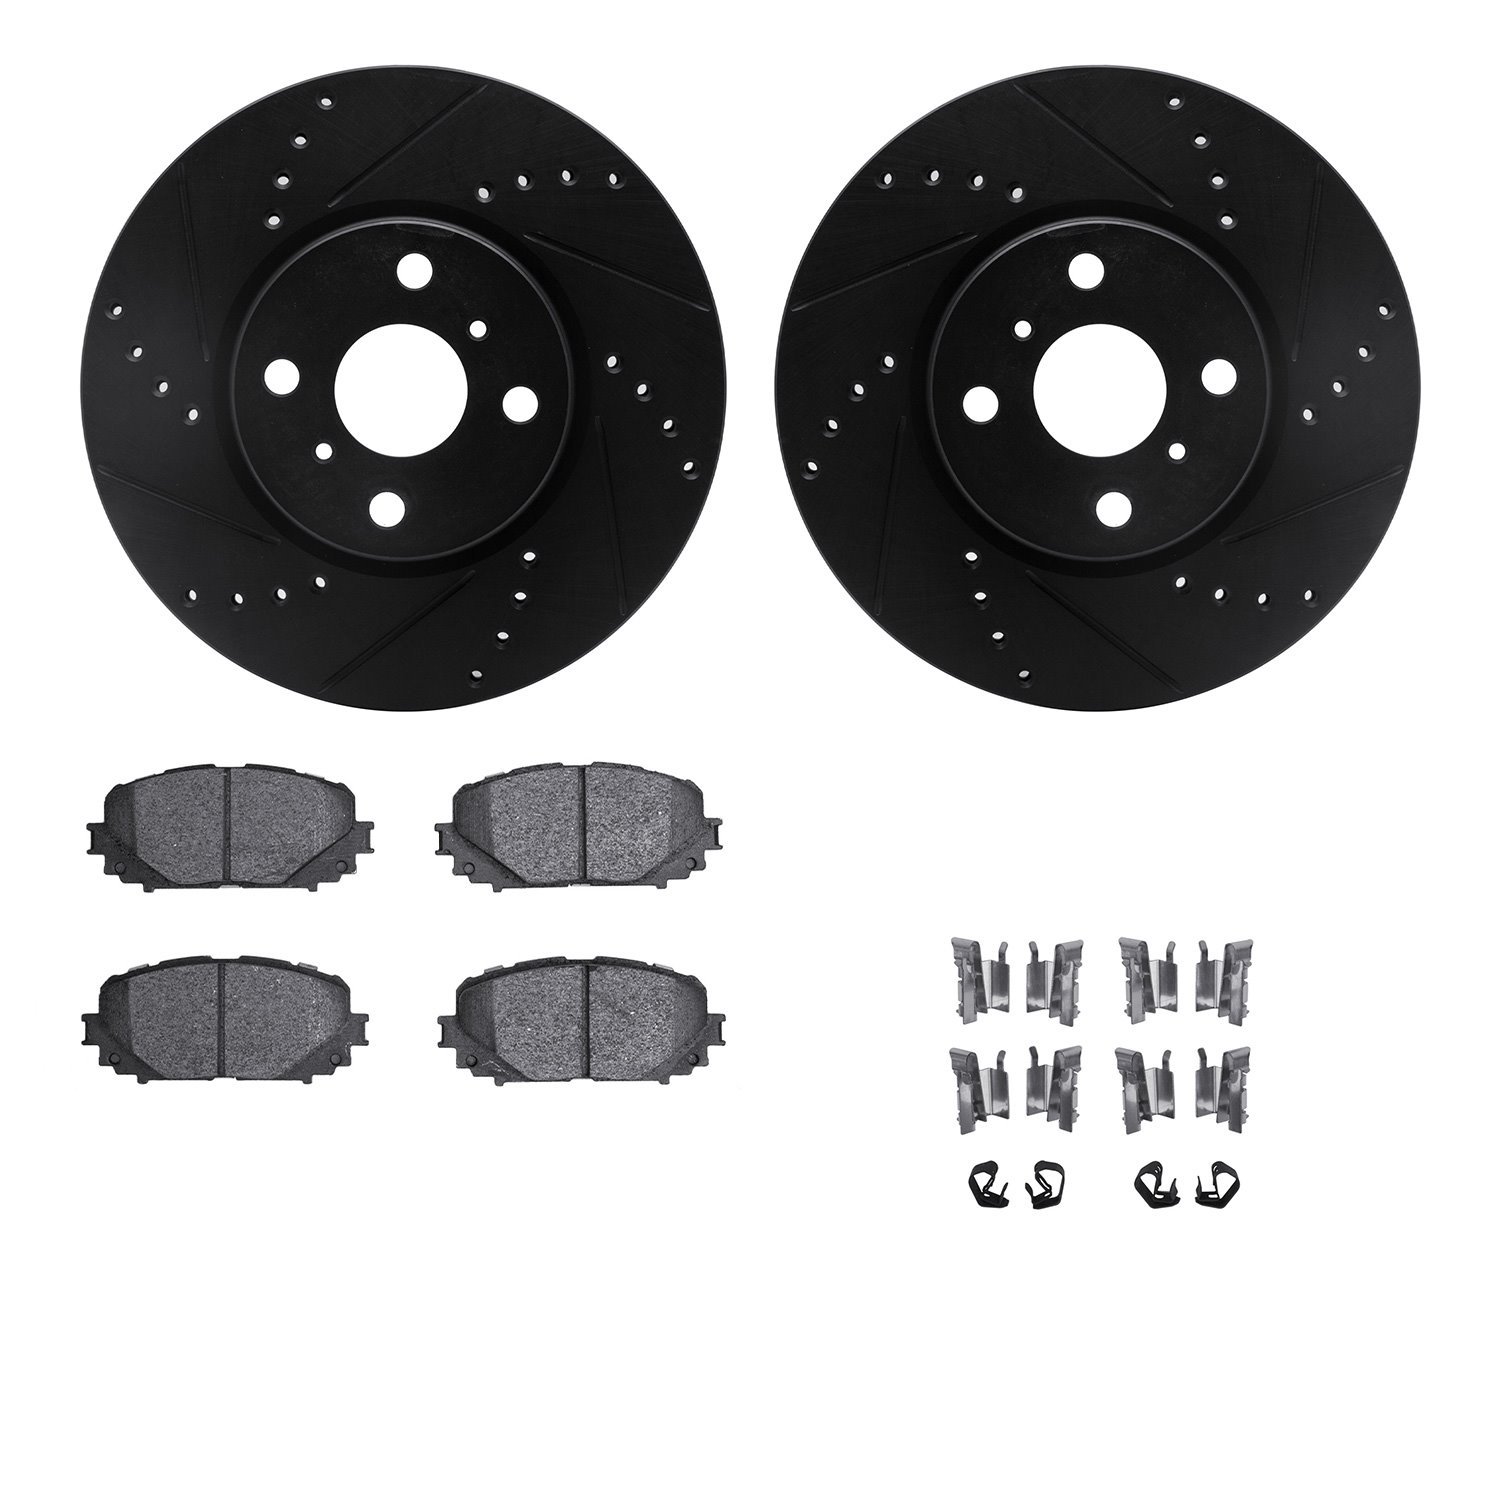 8312-76176 Drilled/Slotted Brake Rotors with 3000-Series Ceramic Brake Pads Kit & Hardware [Black], 2012-2018 Lexus/Toyota/Scion